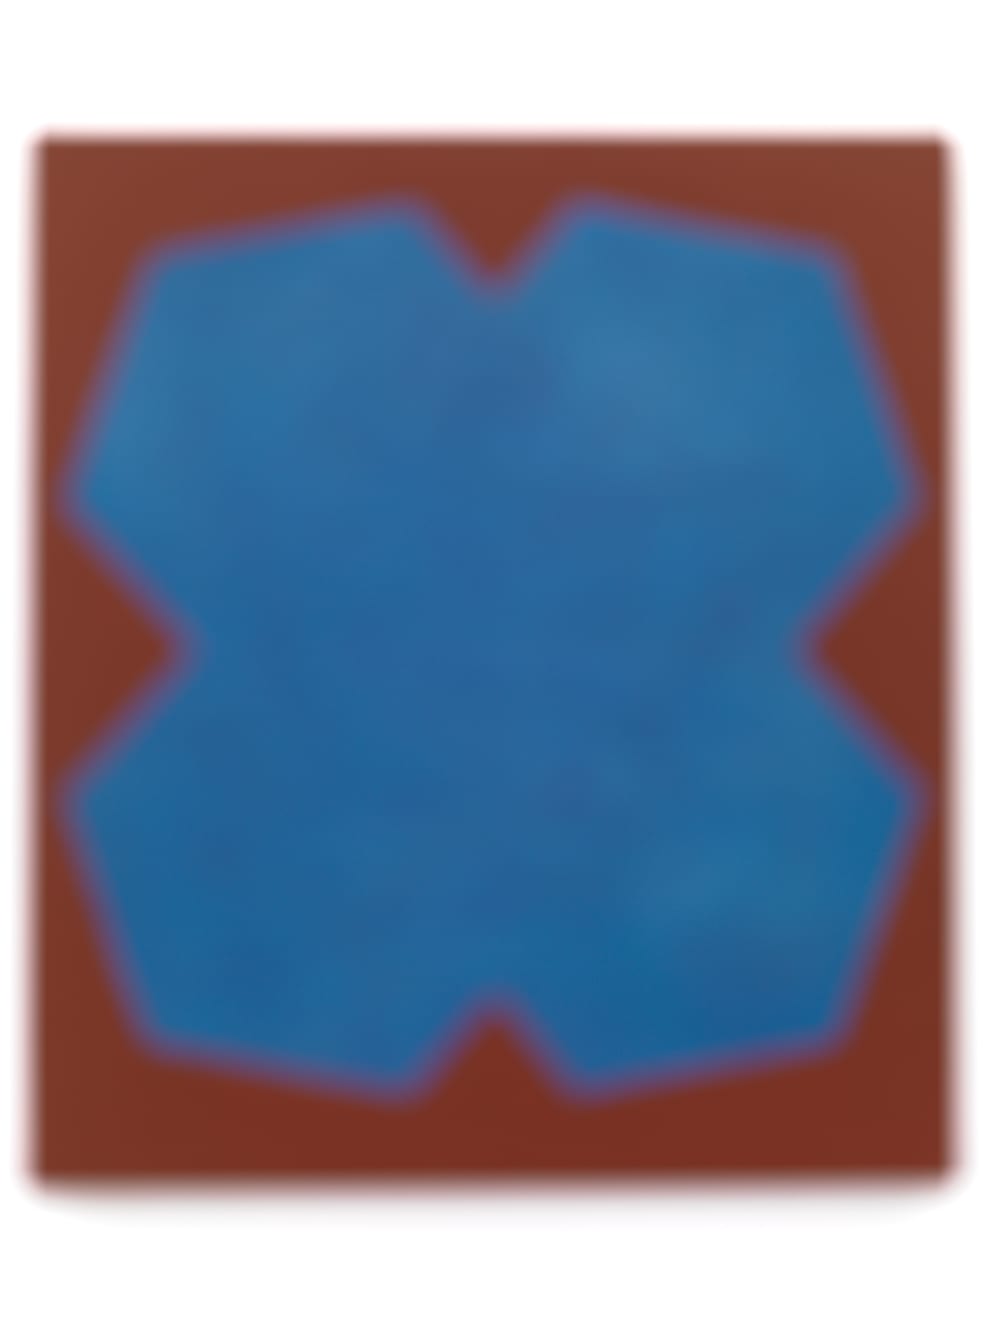 Cobalt Blue Archival Pigment Print Limited Edition 9 100 x 133 cm $1900